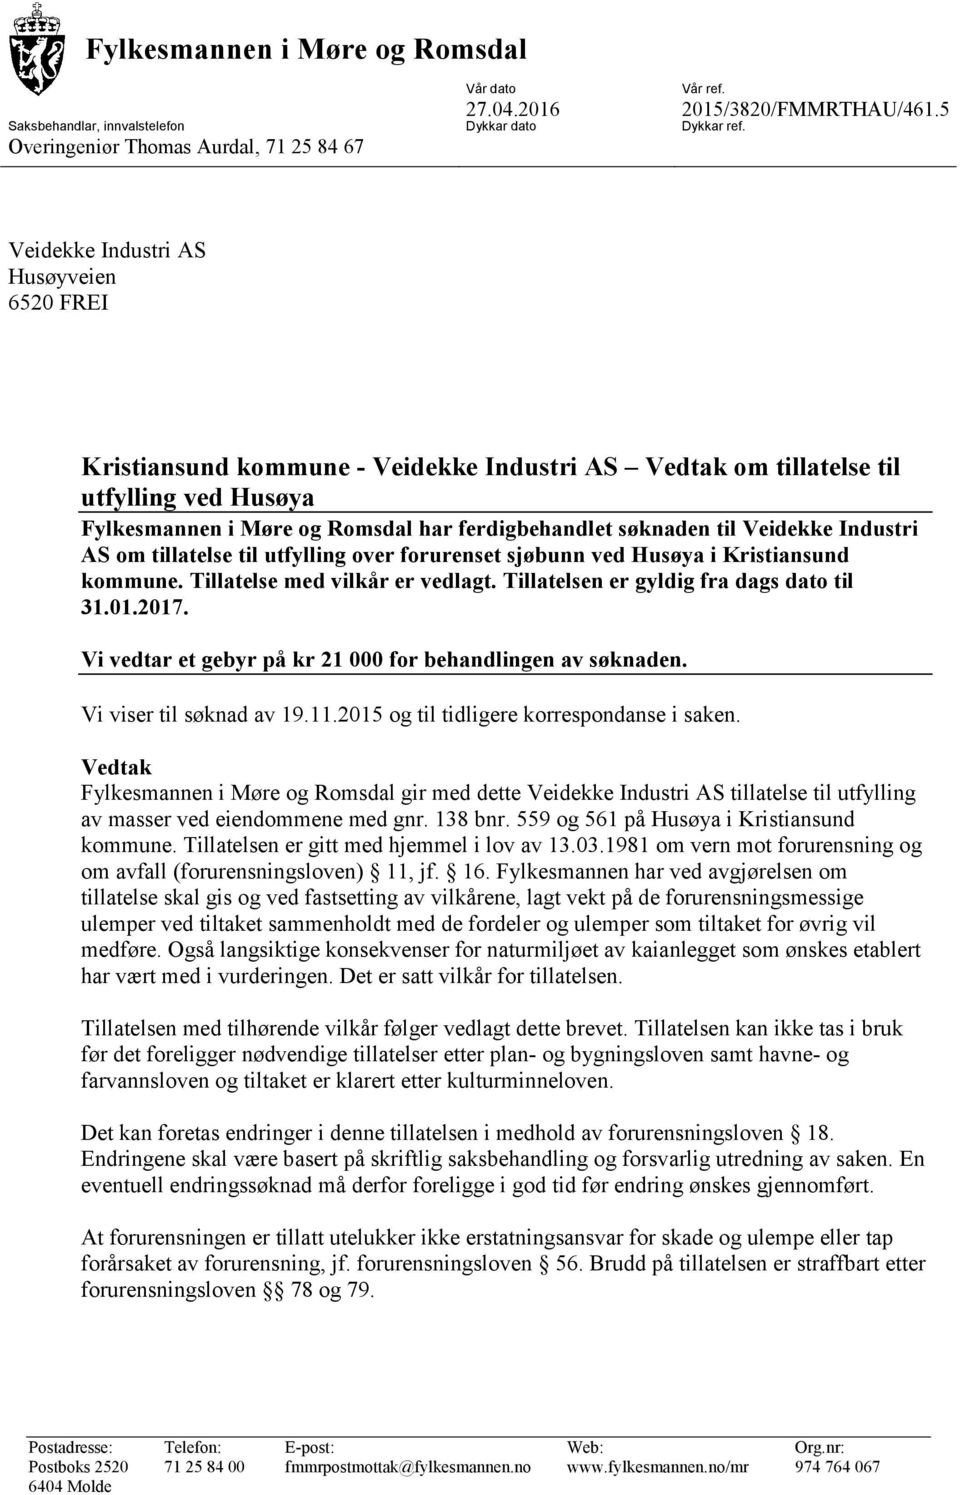 Veidekke Industri AS om tillatelse til utfylling over forurenset sjøbunn ved Husøya i Kristiansund kommune. Tillatelse med vilkår er vedlagt. Tillatelsen er gyldig fra dags dato til 31.01.2017.